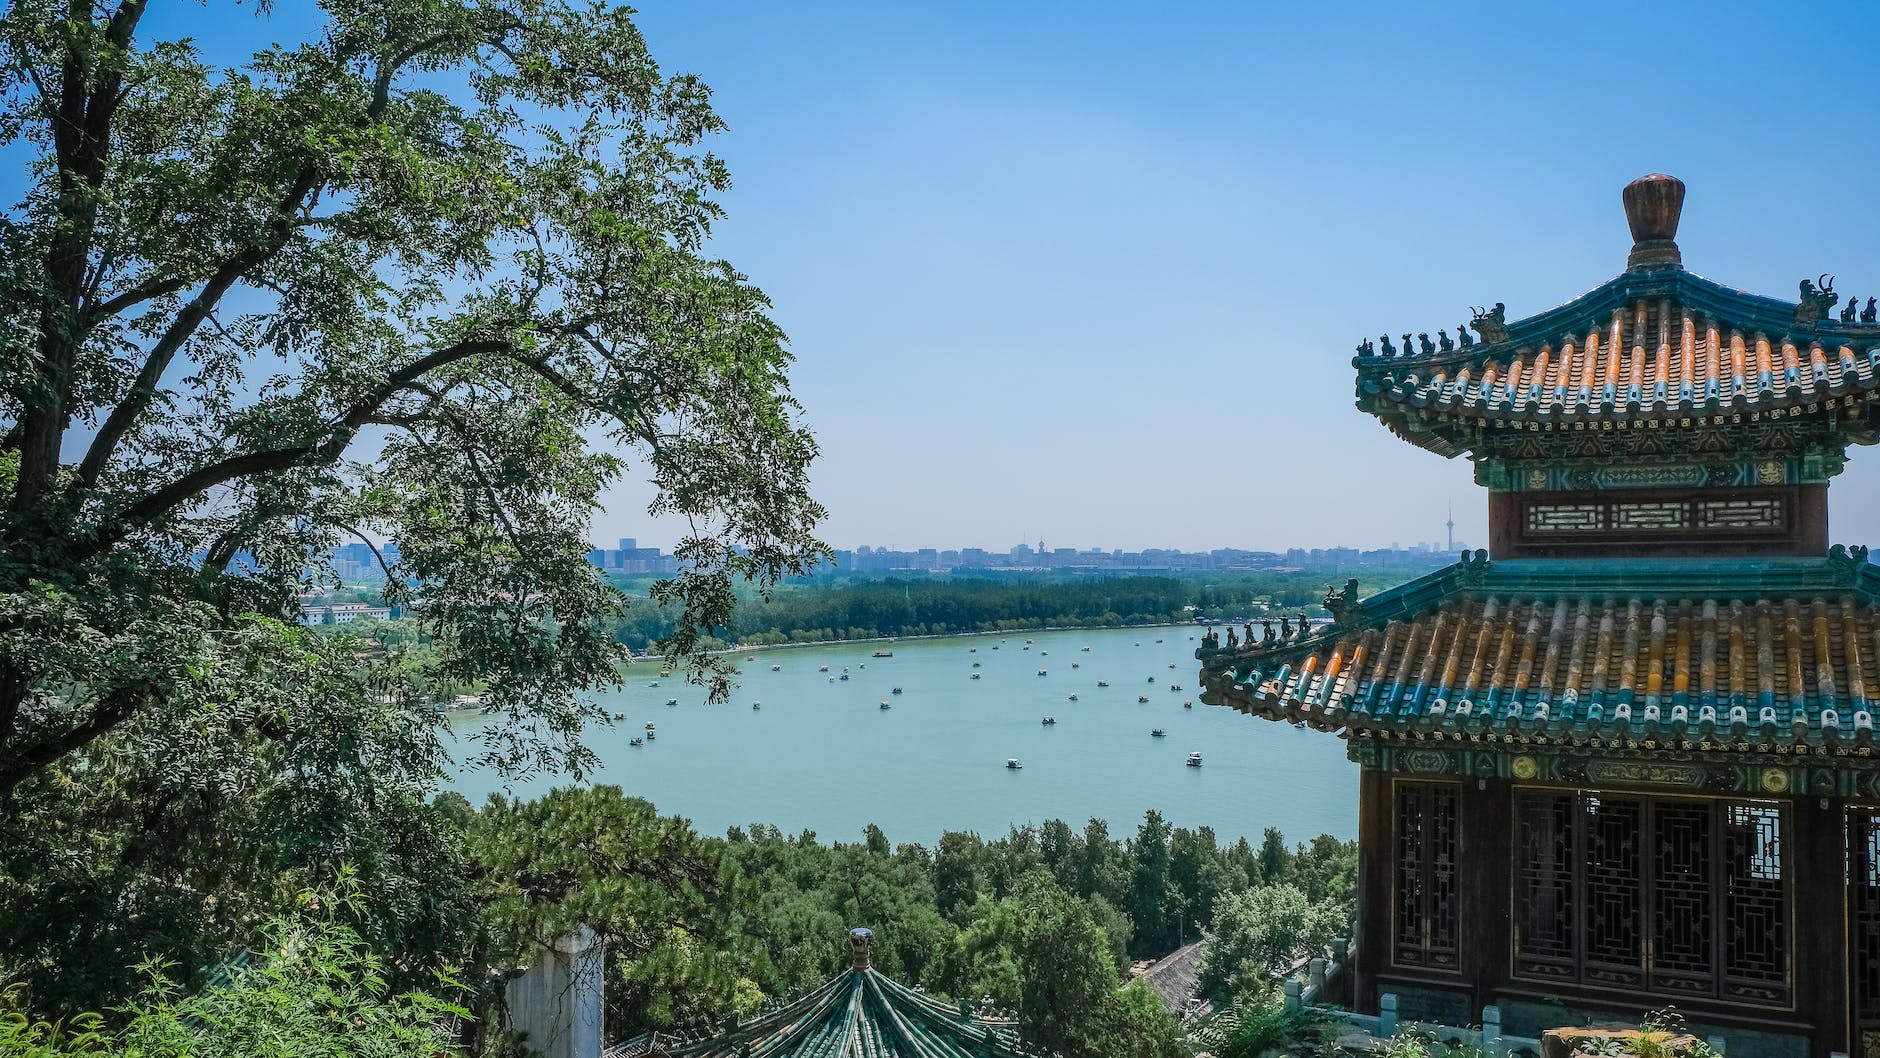 Discovering the Best of Beijing’s UNESCO World Heritage Sites